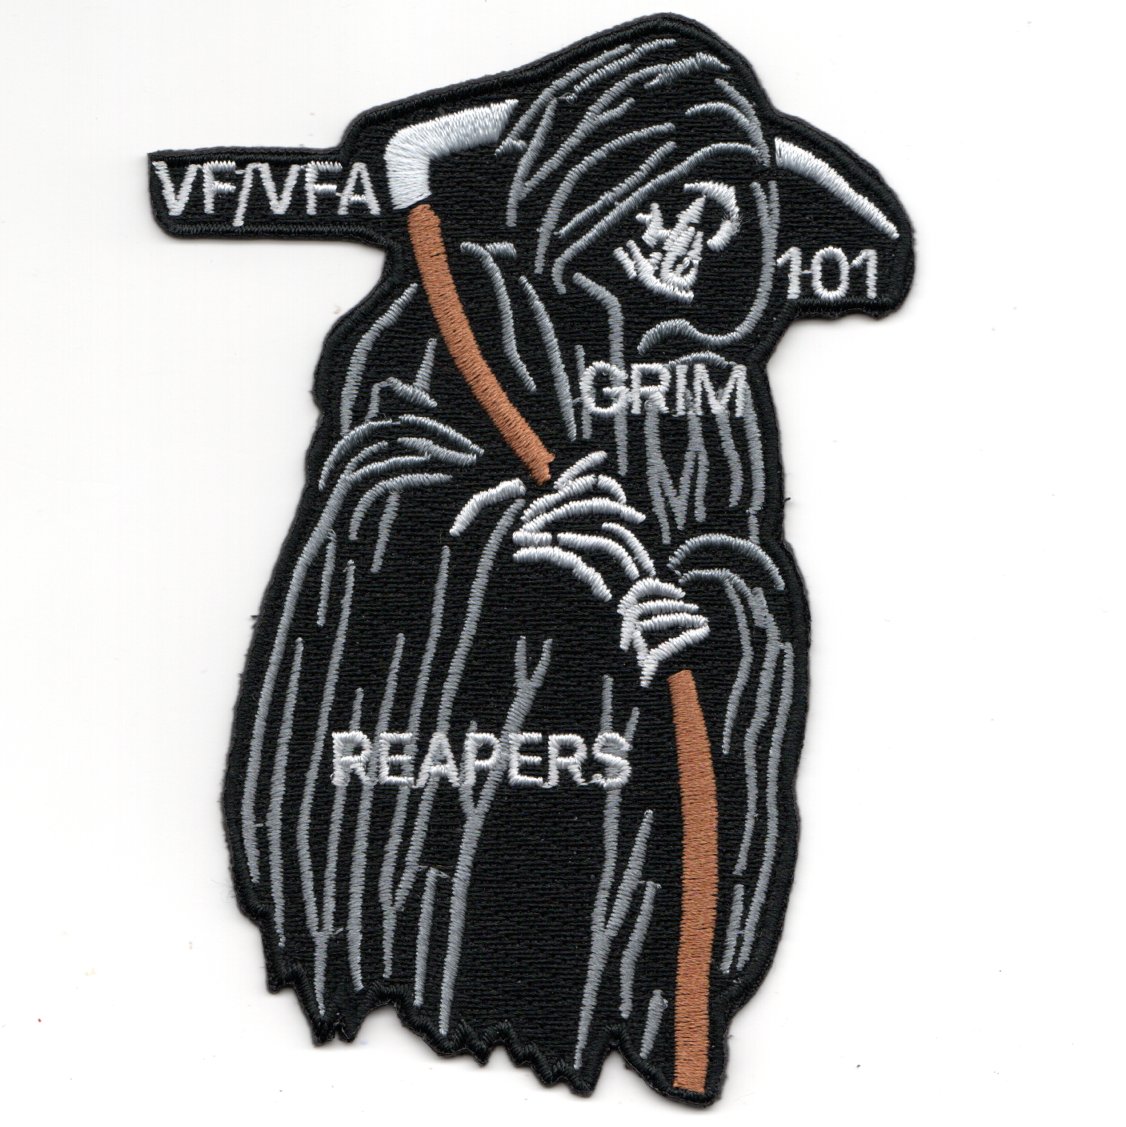 VFA-101 GRIM REAPER Patch (Black)